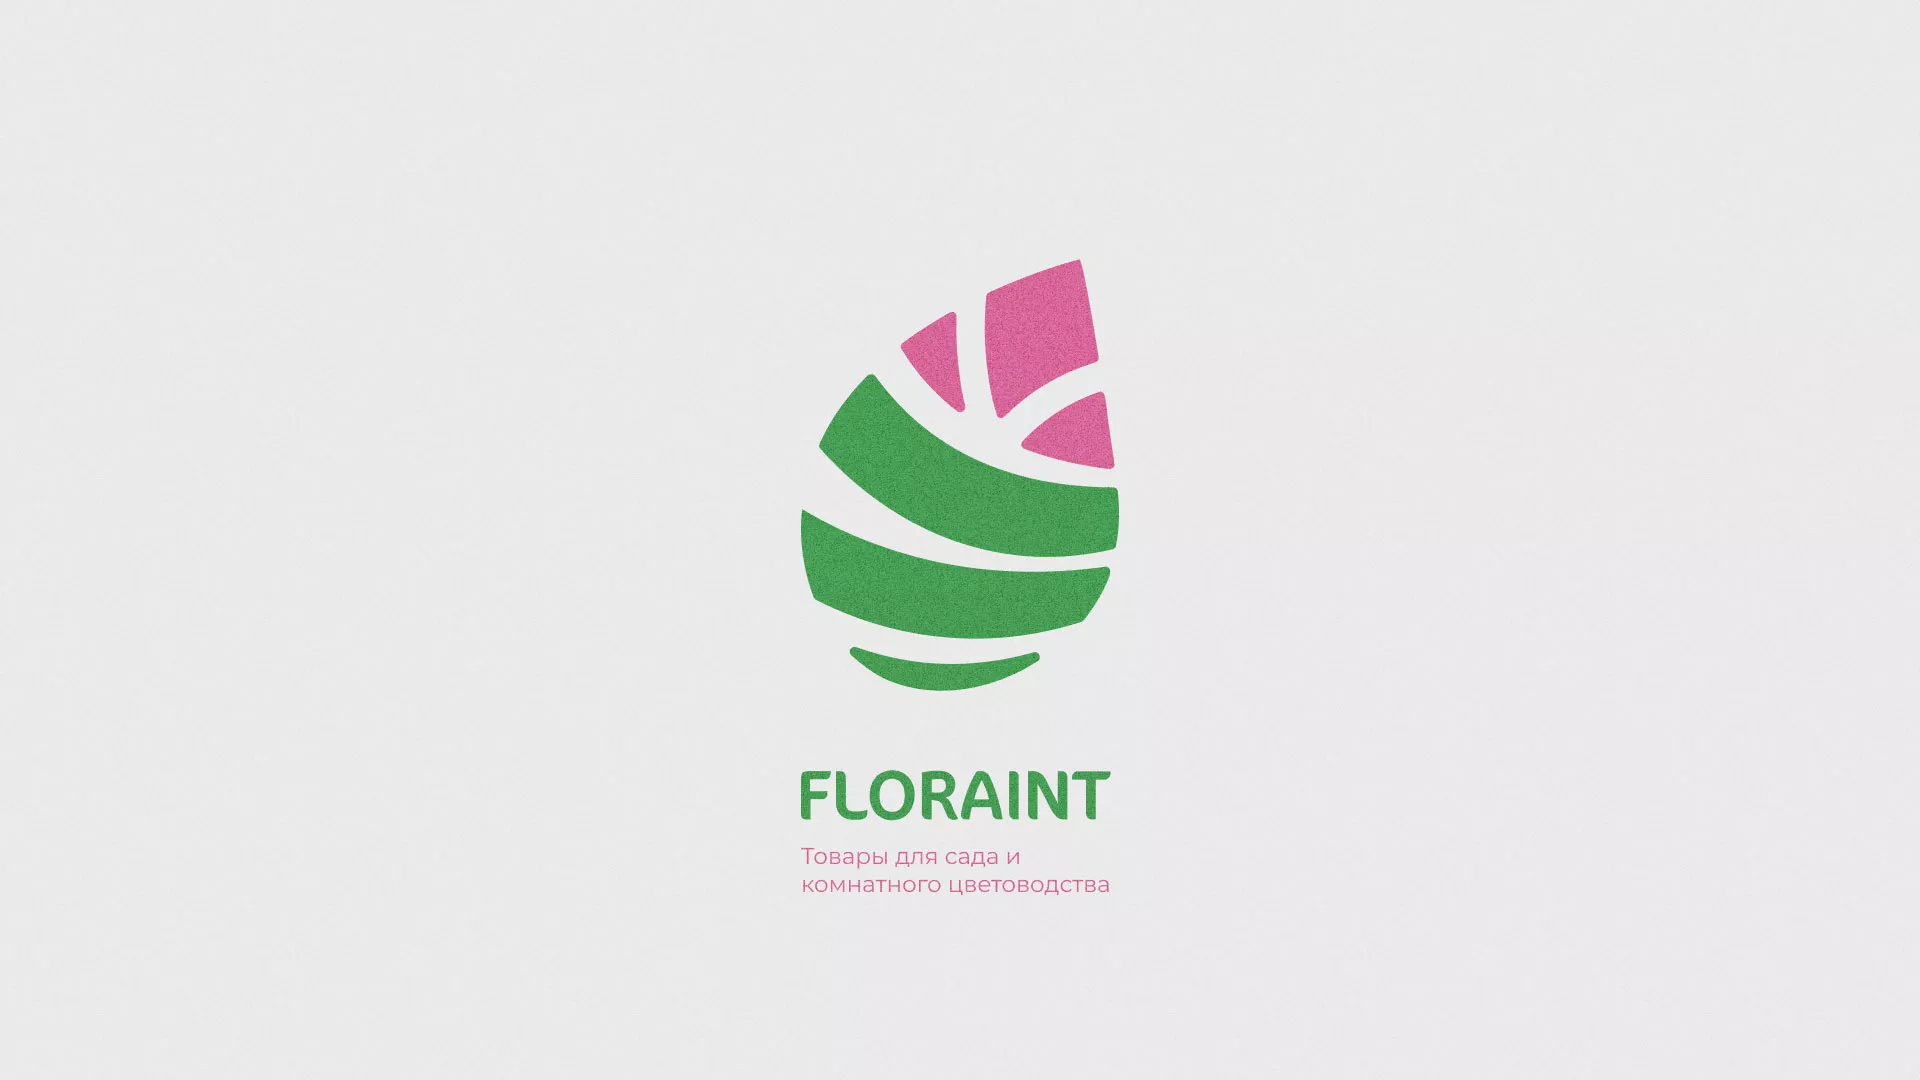 Разработка оформления профиля Instagram для магазина «Floraint» в Асино